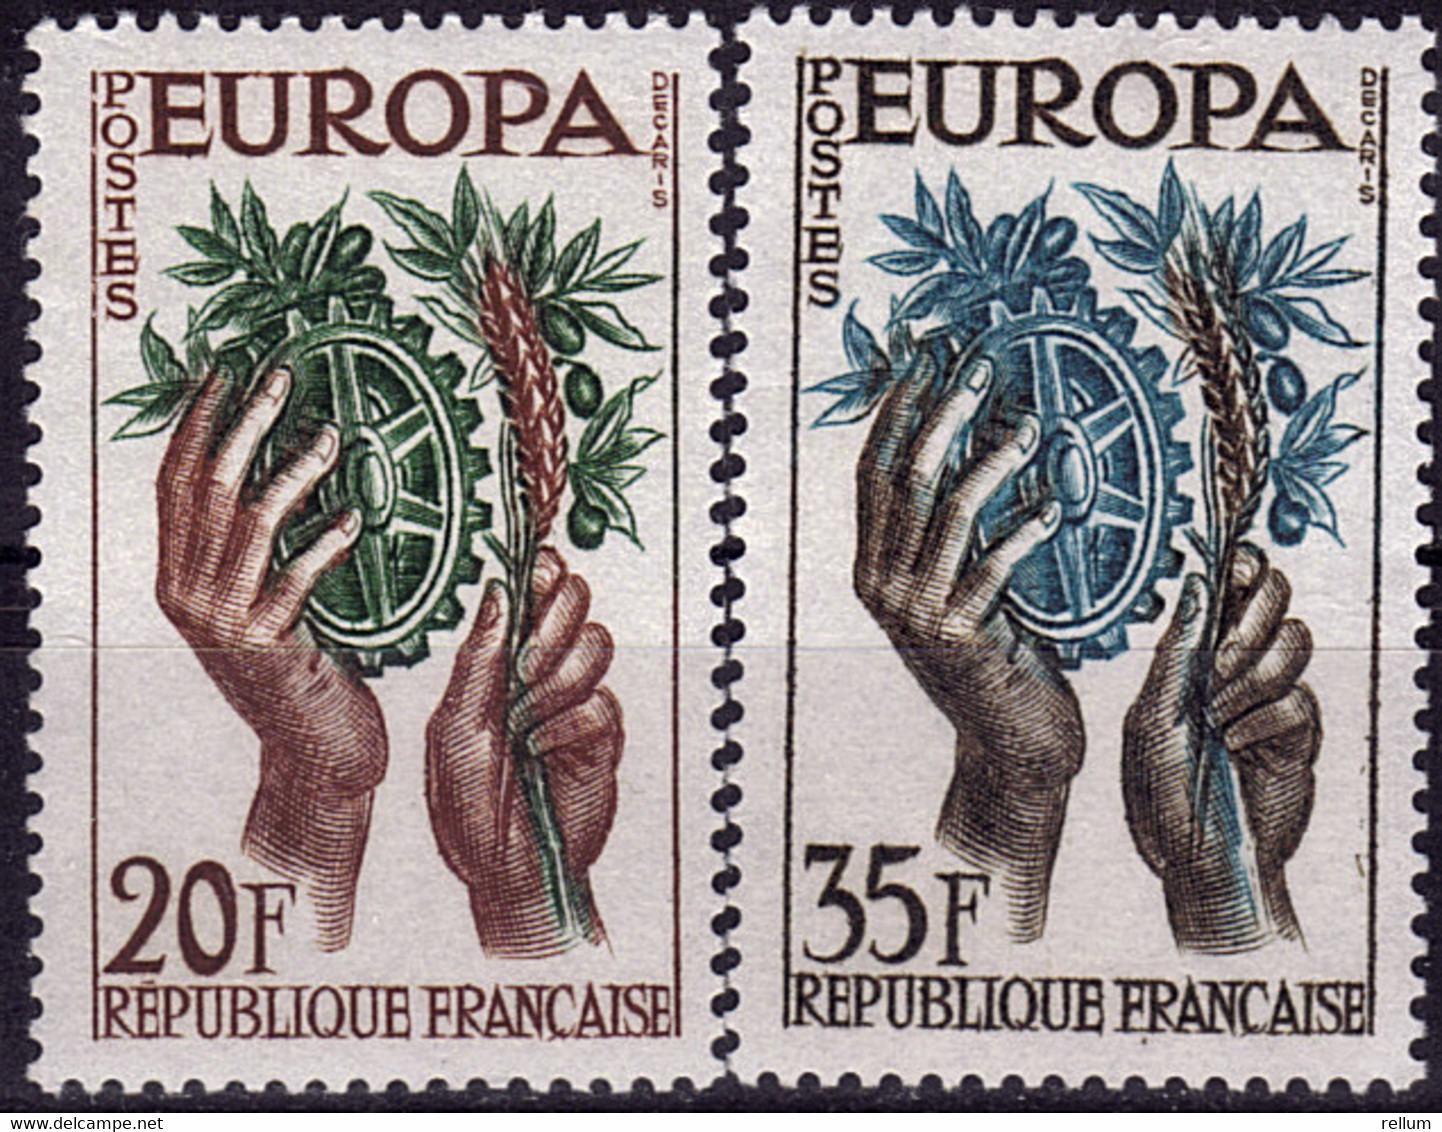 France - Europa CEPT 1957 - Yvert Nr. 1122/1123 - Michel Nr. 1157/1158  ** - 1957